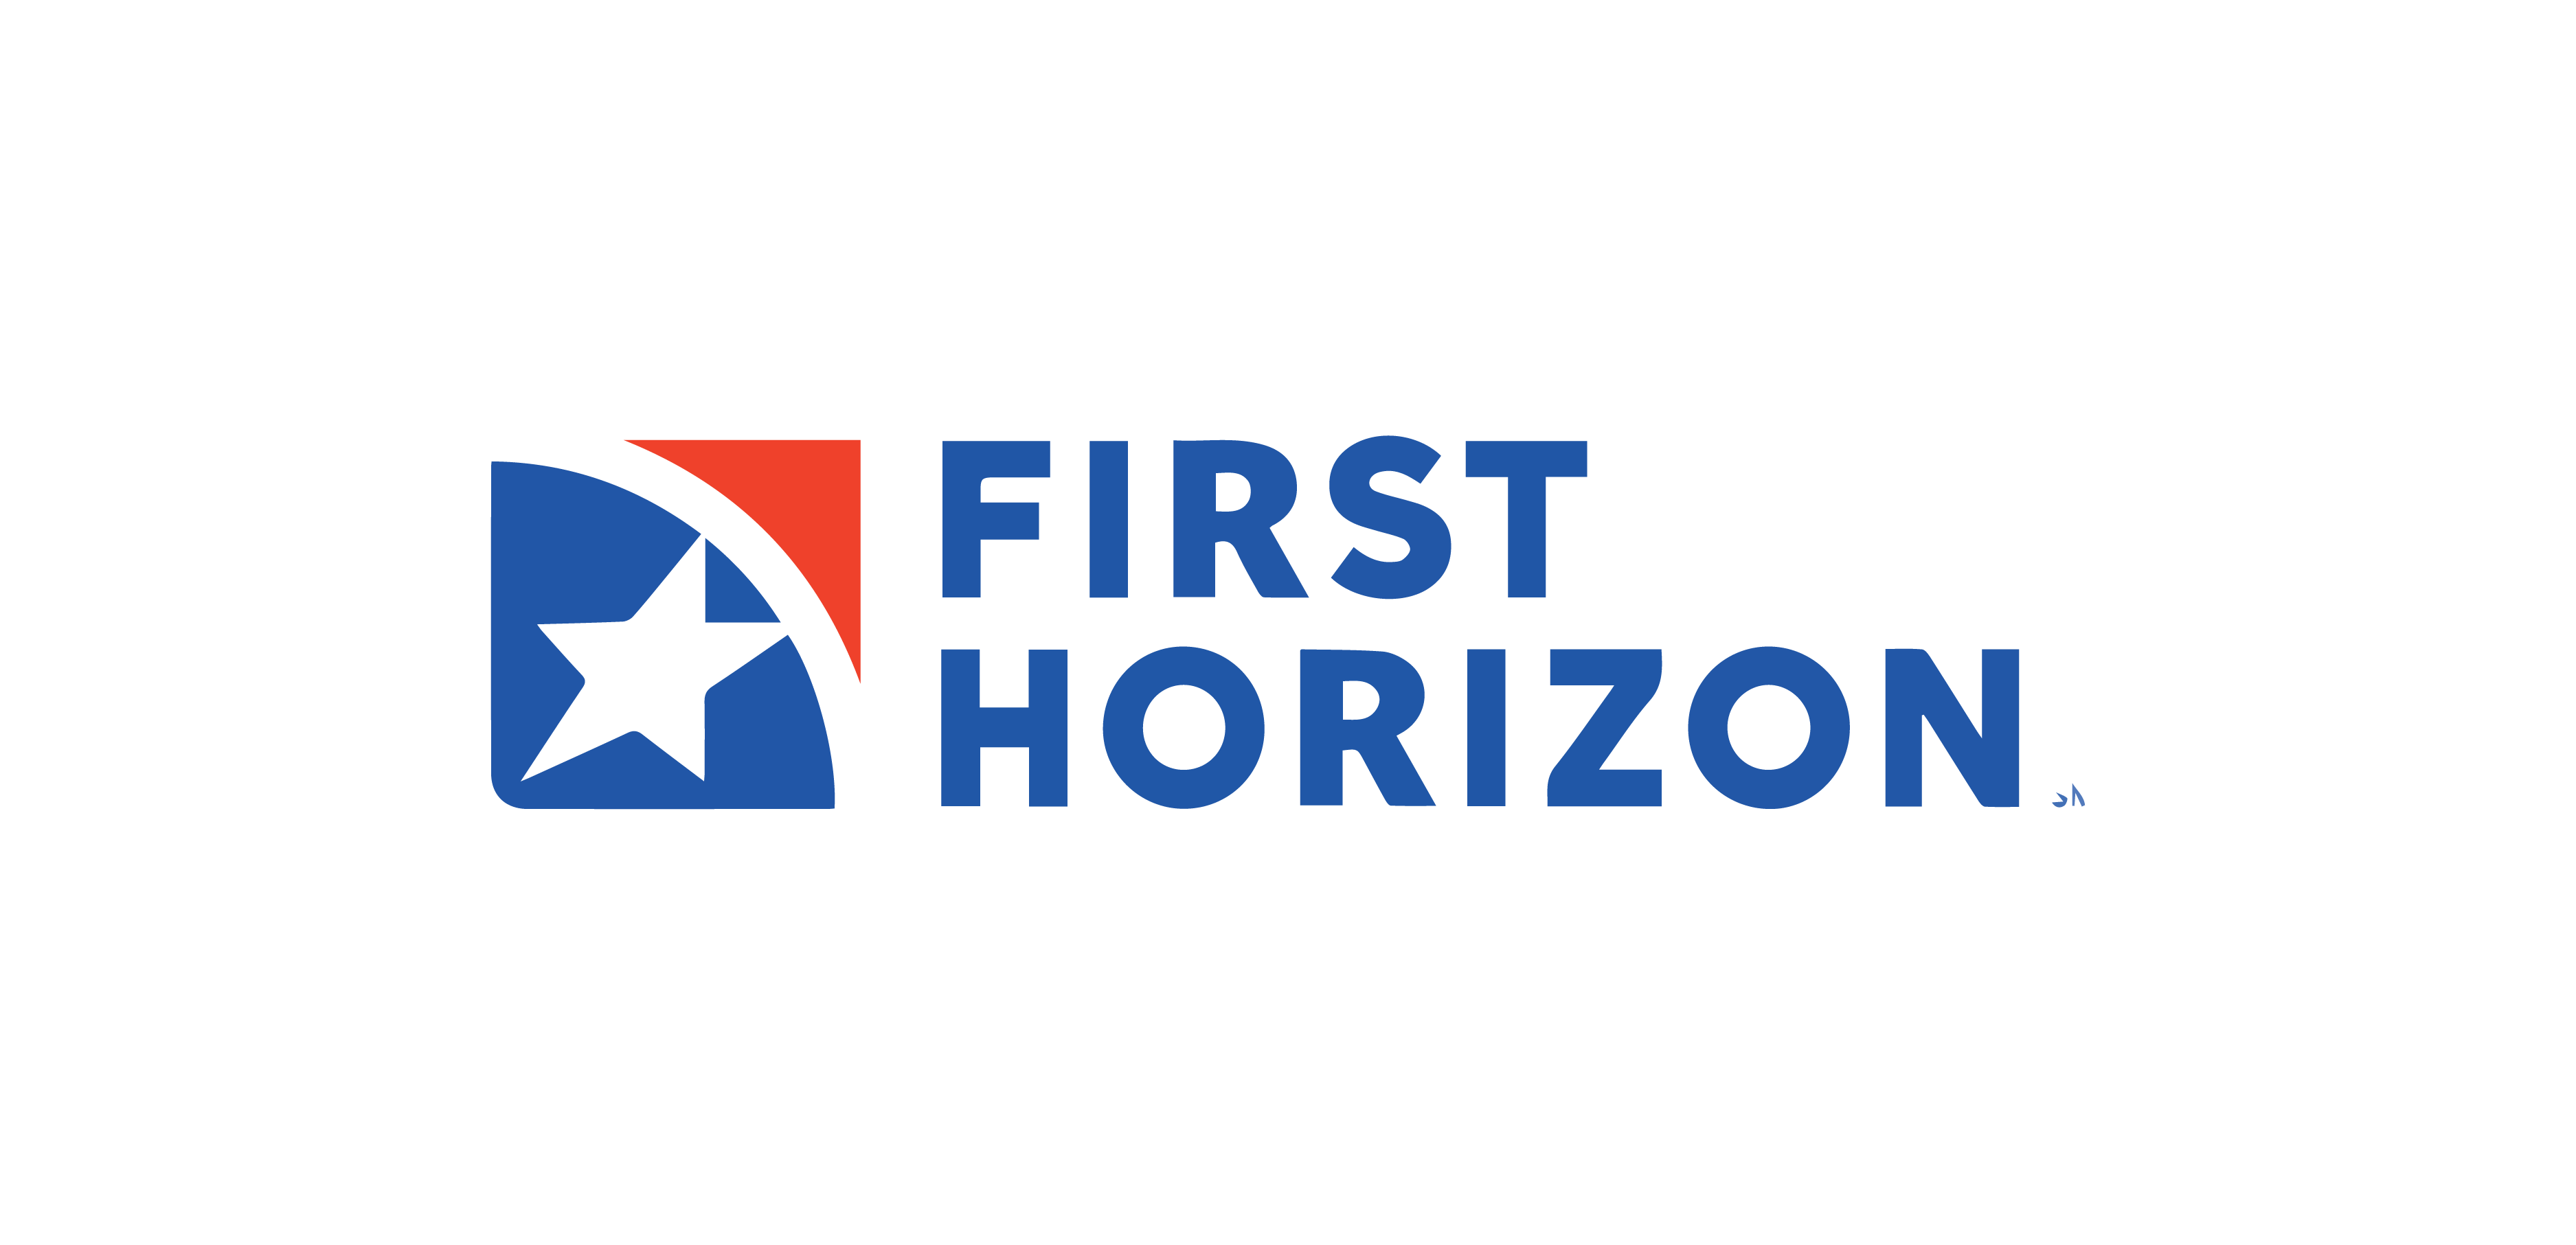 First Horizon Bank - Abbott Martin